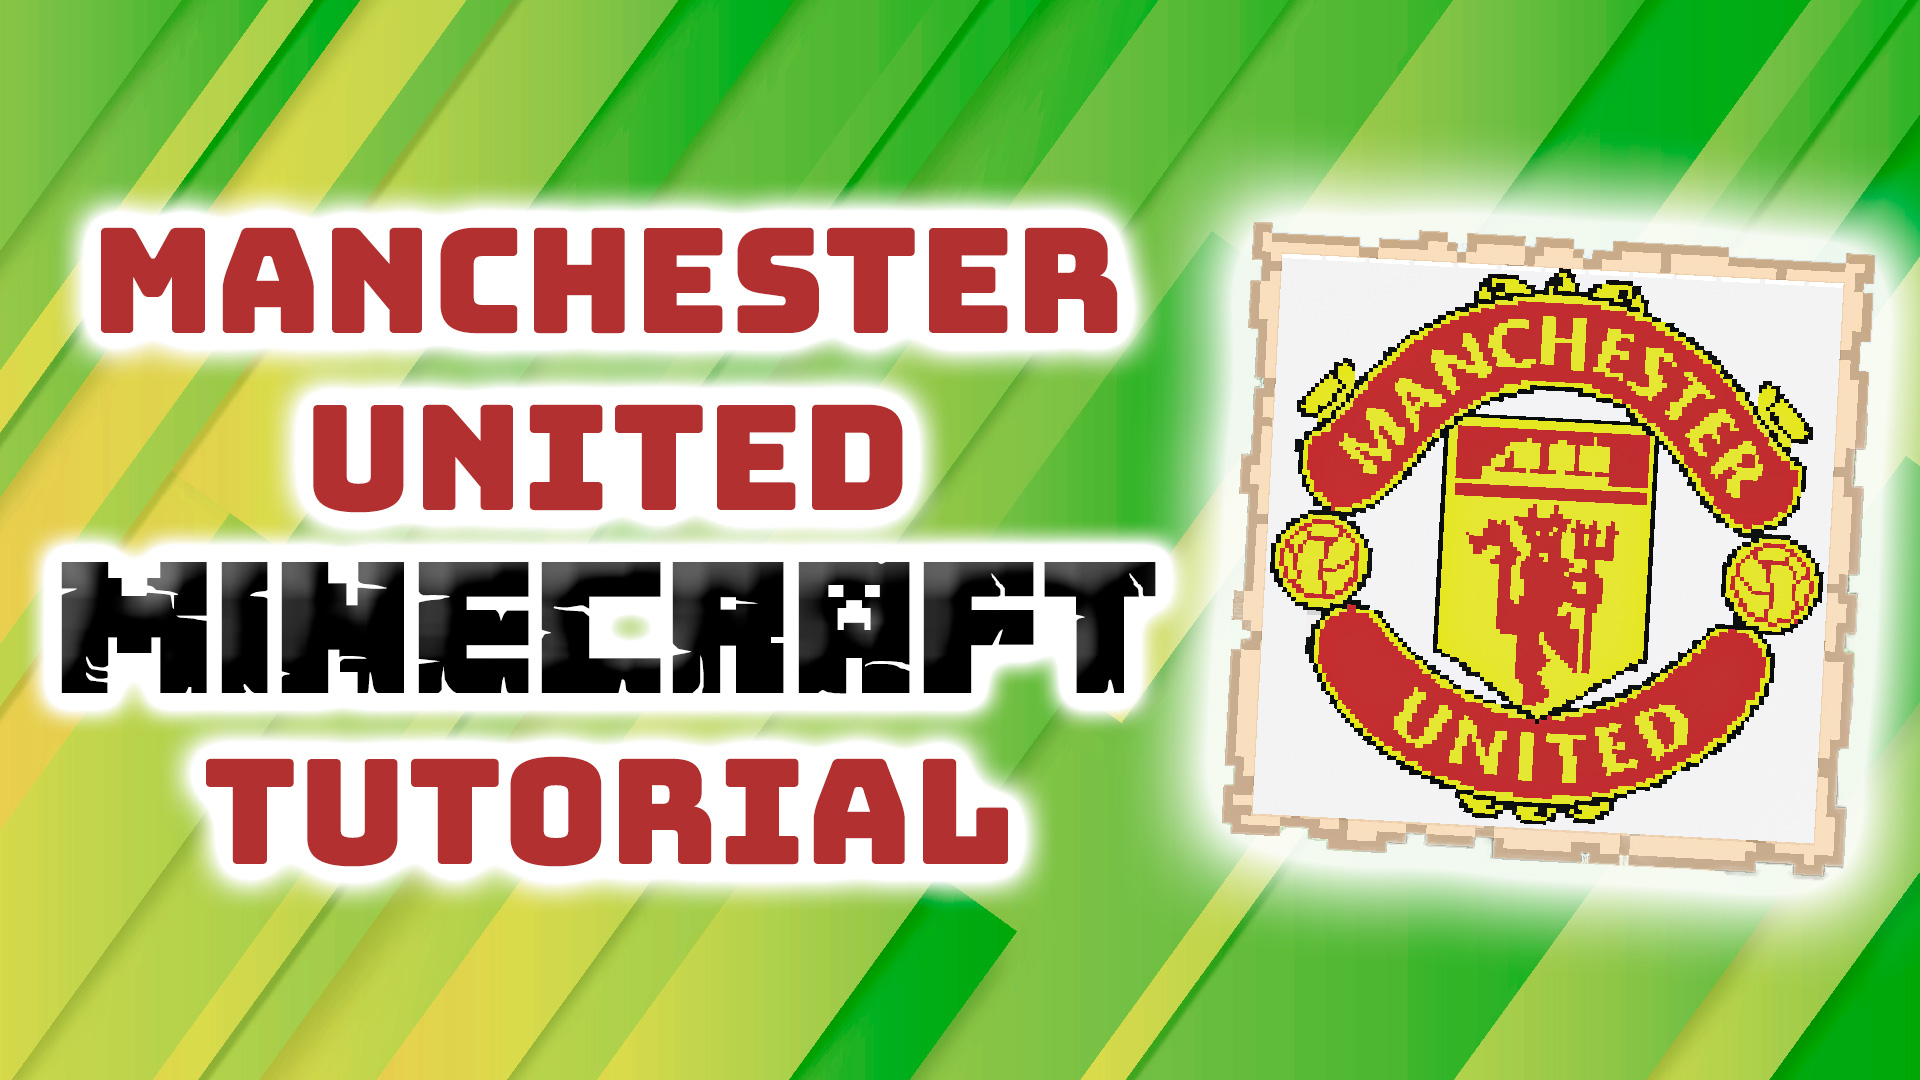 Minecraft Manchester United logo Pixel Art tutorial